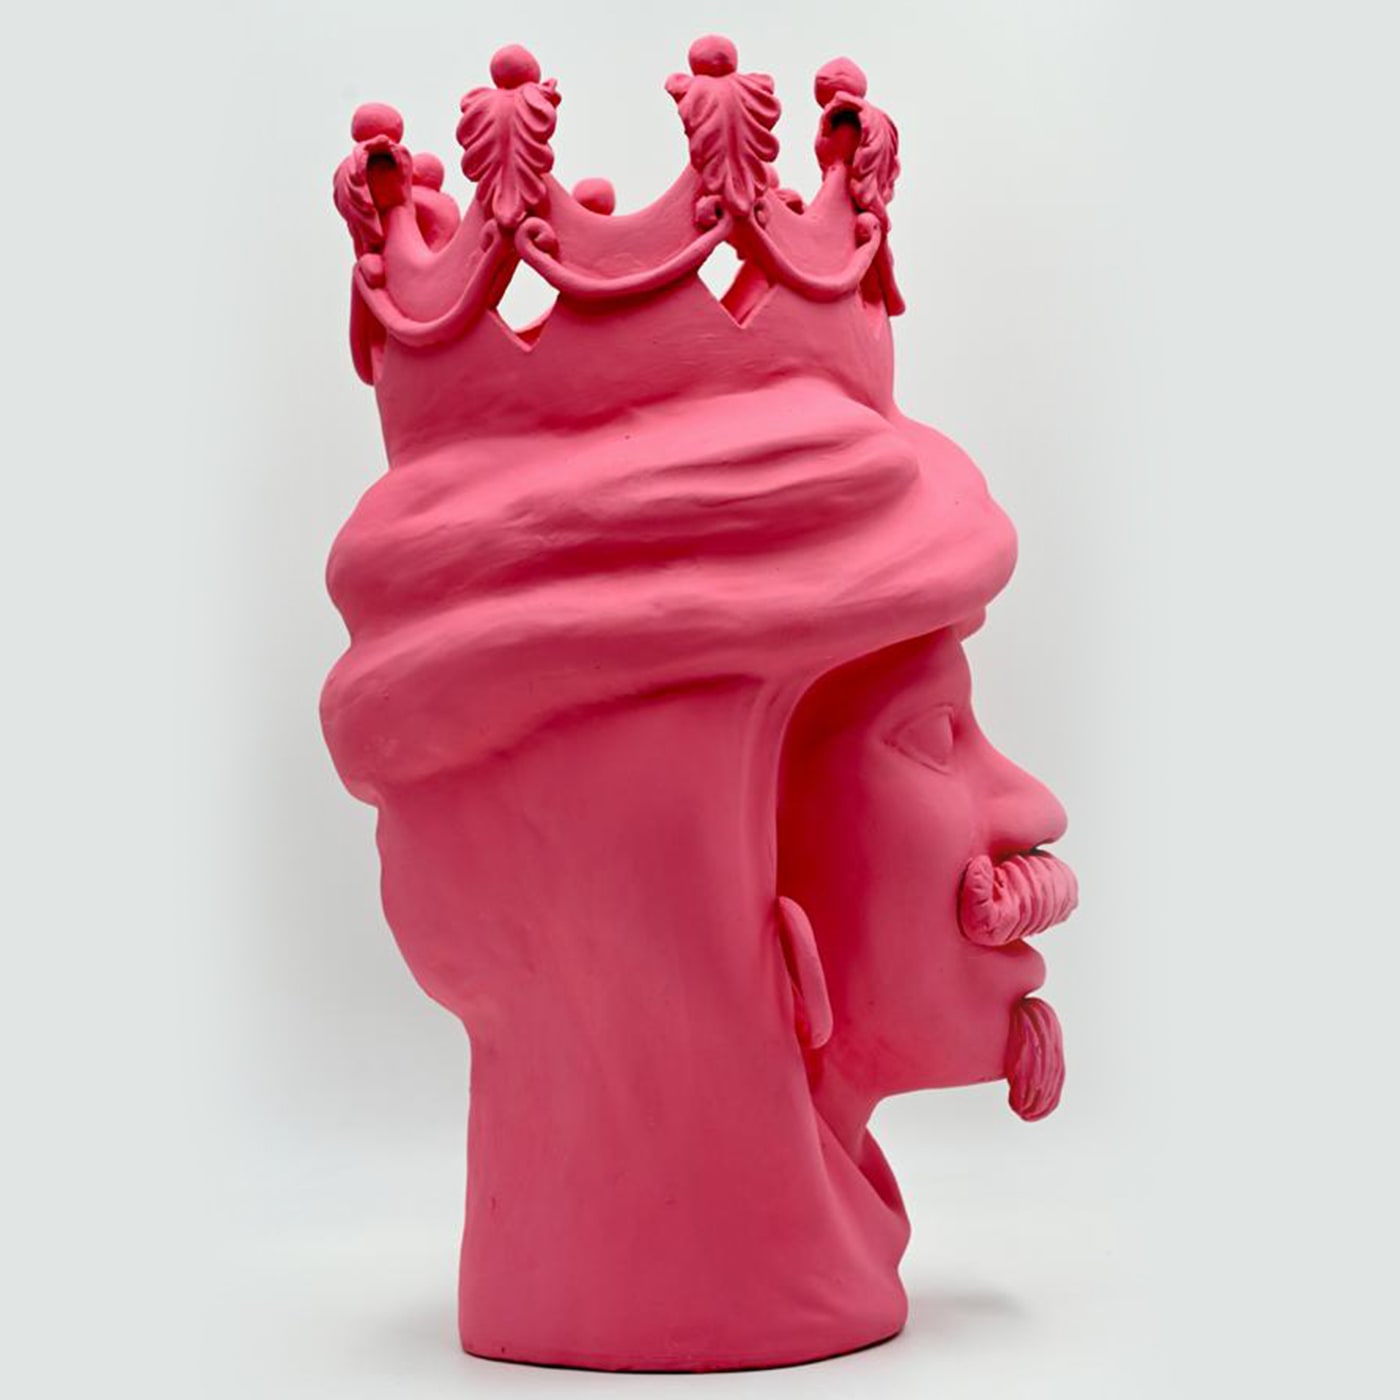 Pink Moor's Head Sculpture Handmade in Italy